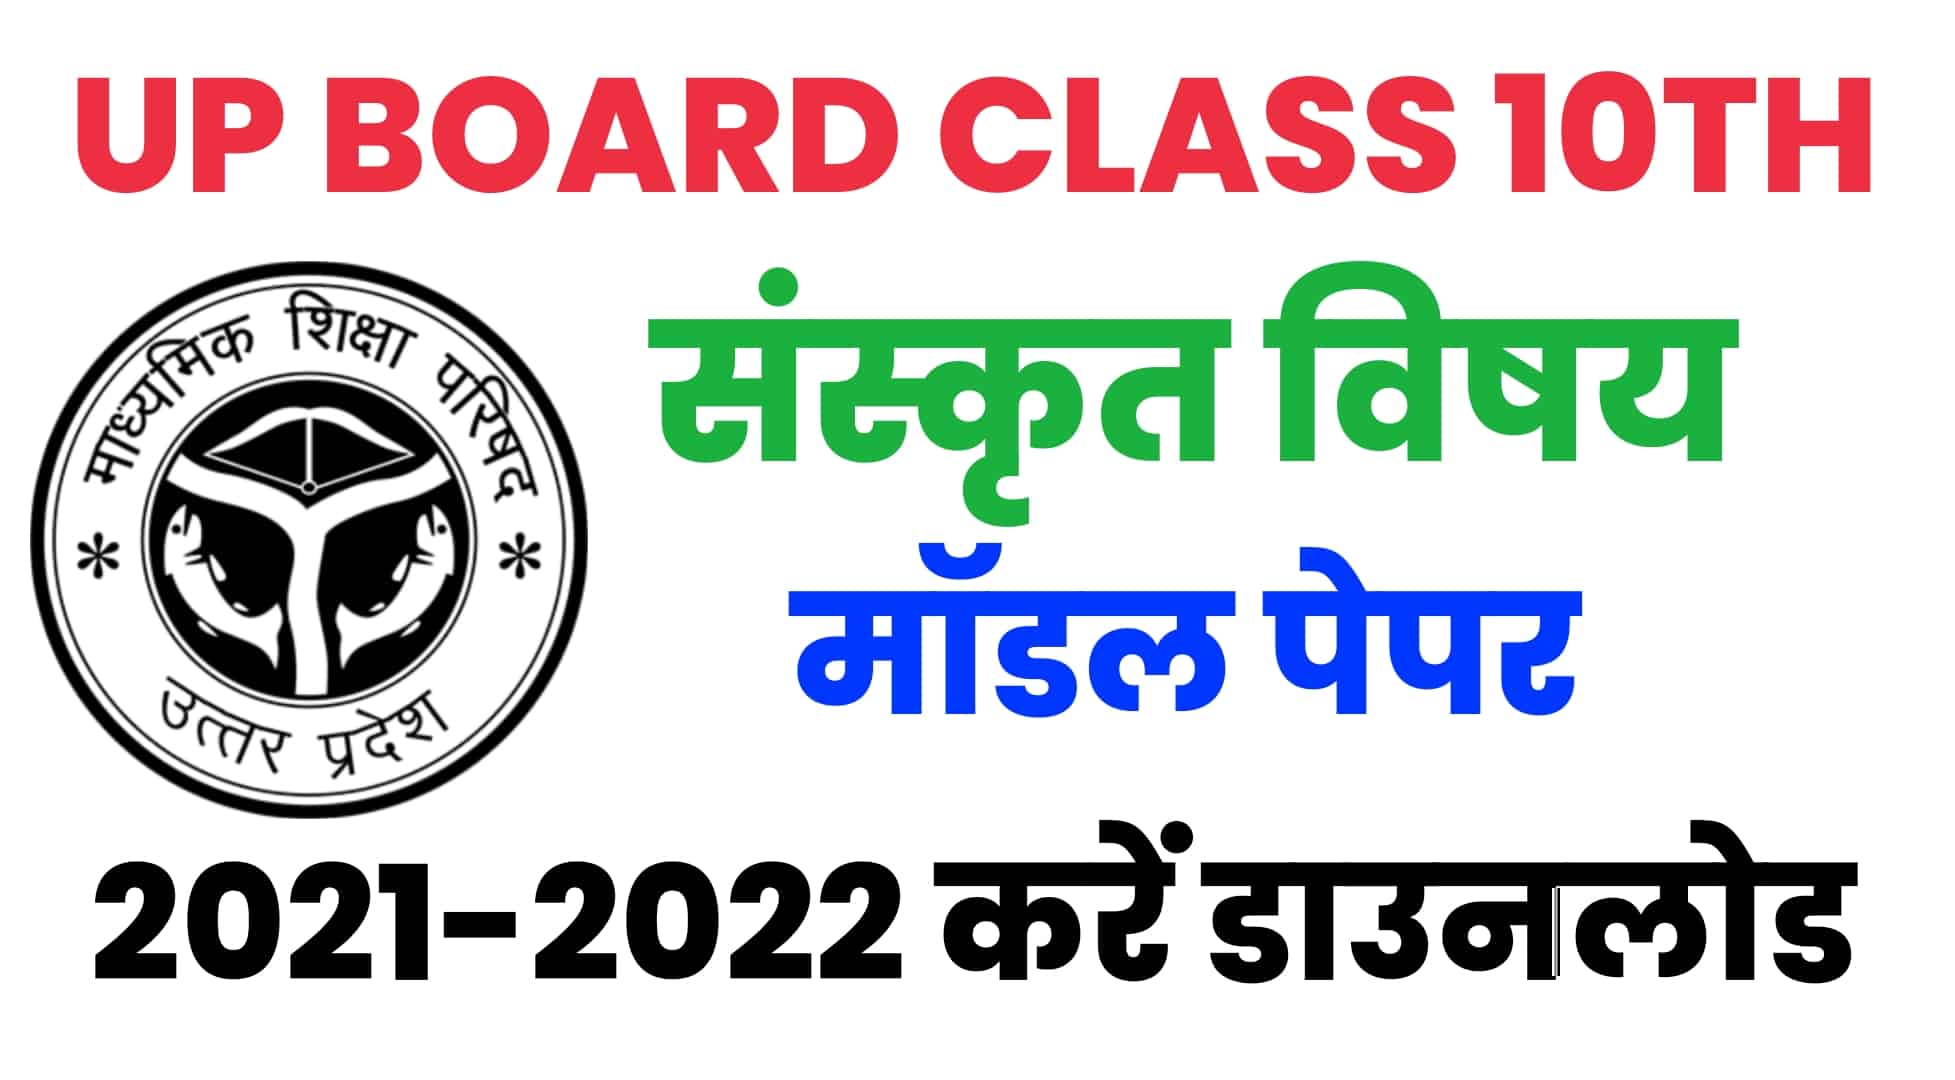 UP Board Class 10th Sanskrit Model Paper 2022 : यूपी बोर्ड 10वीं के संस्कृत मॉडल पेपर को करें डाउनलोड